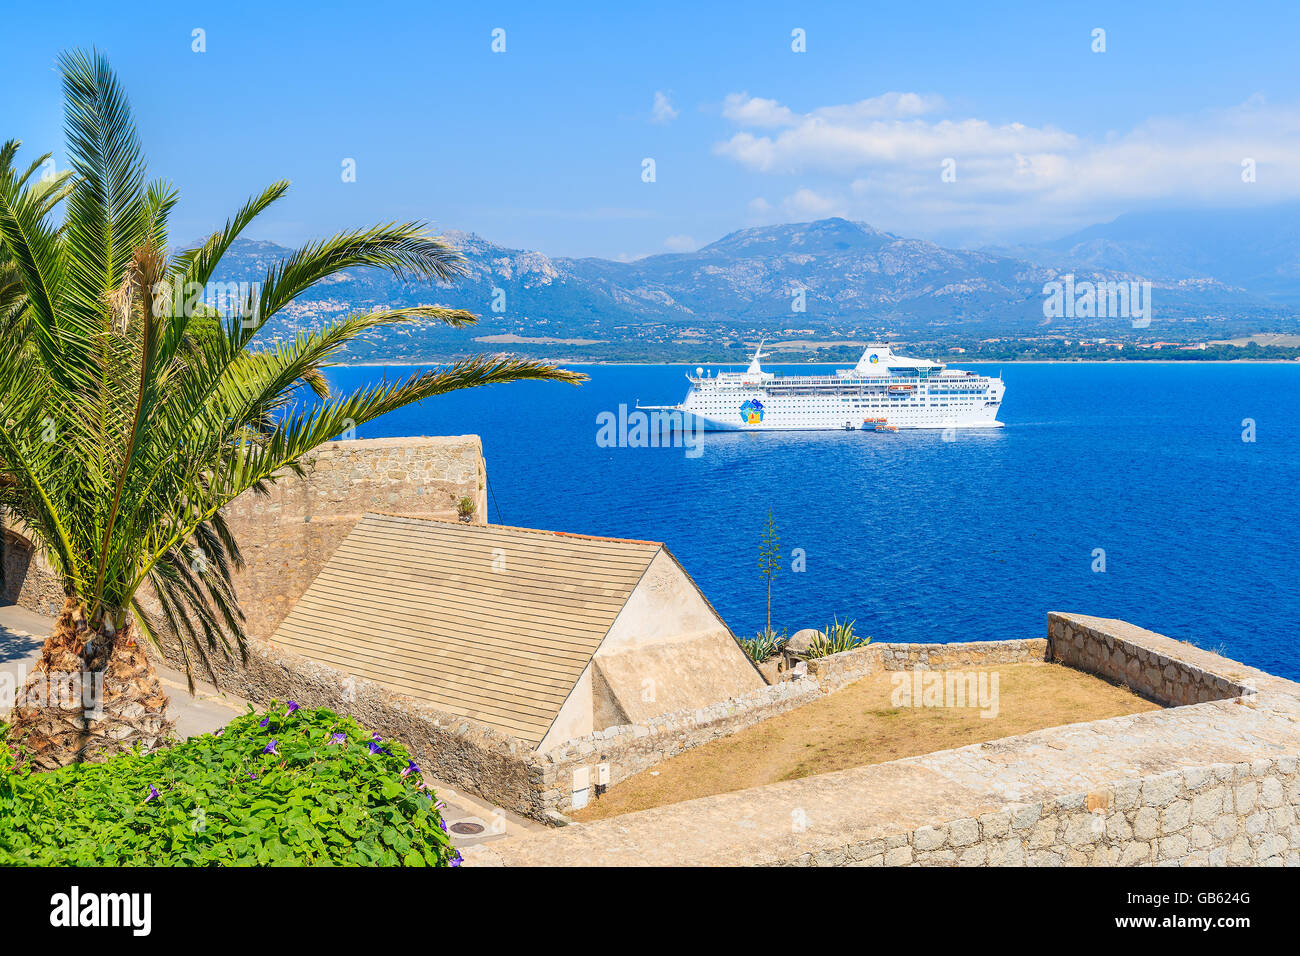 CALVI, Korsika - 28. Juni 2015: Blick auf Kreuzfahrtschiff Liegeplatz am blauen Meer in der Bucht von Calvi. Calvi hat mittelalterliche Zitadelle, die ist Stockfoto